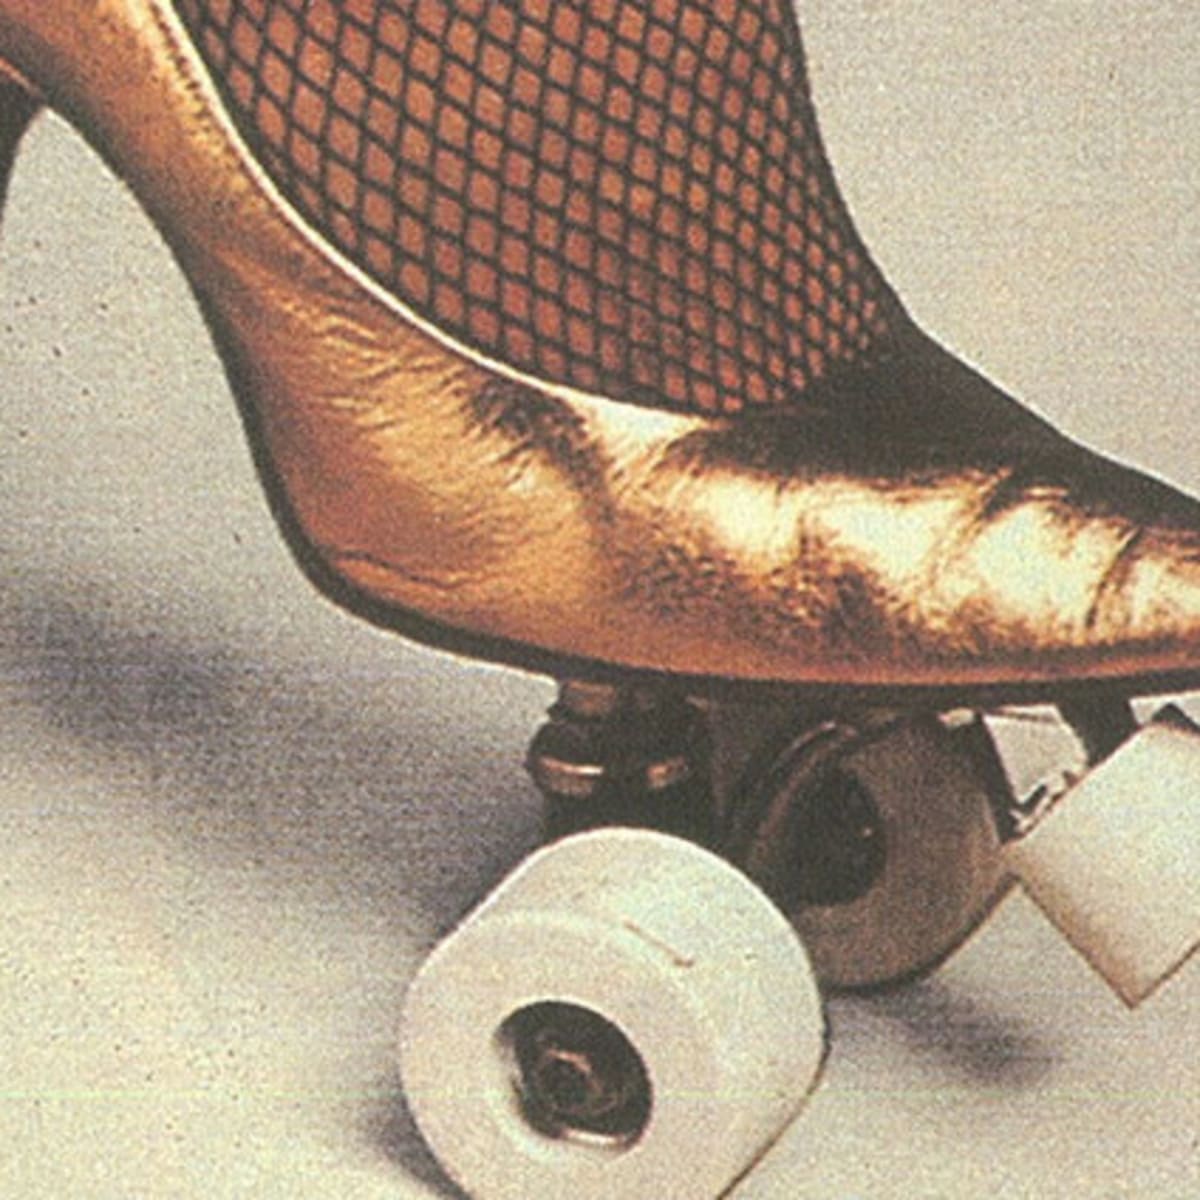 heels history of high heels